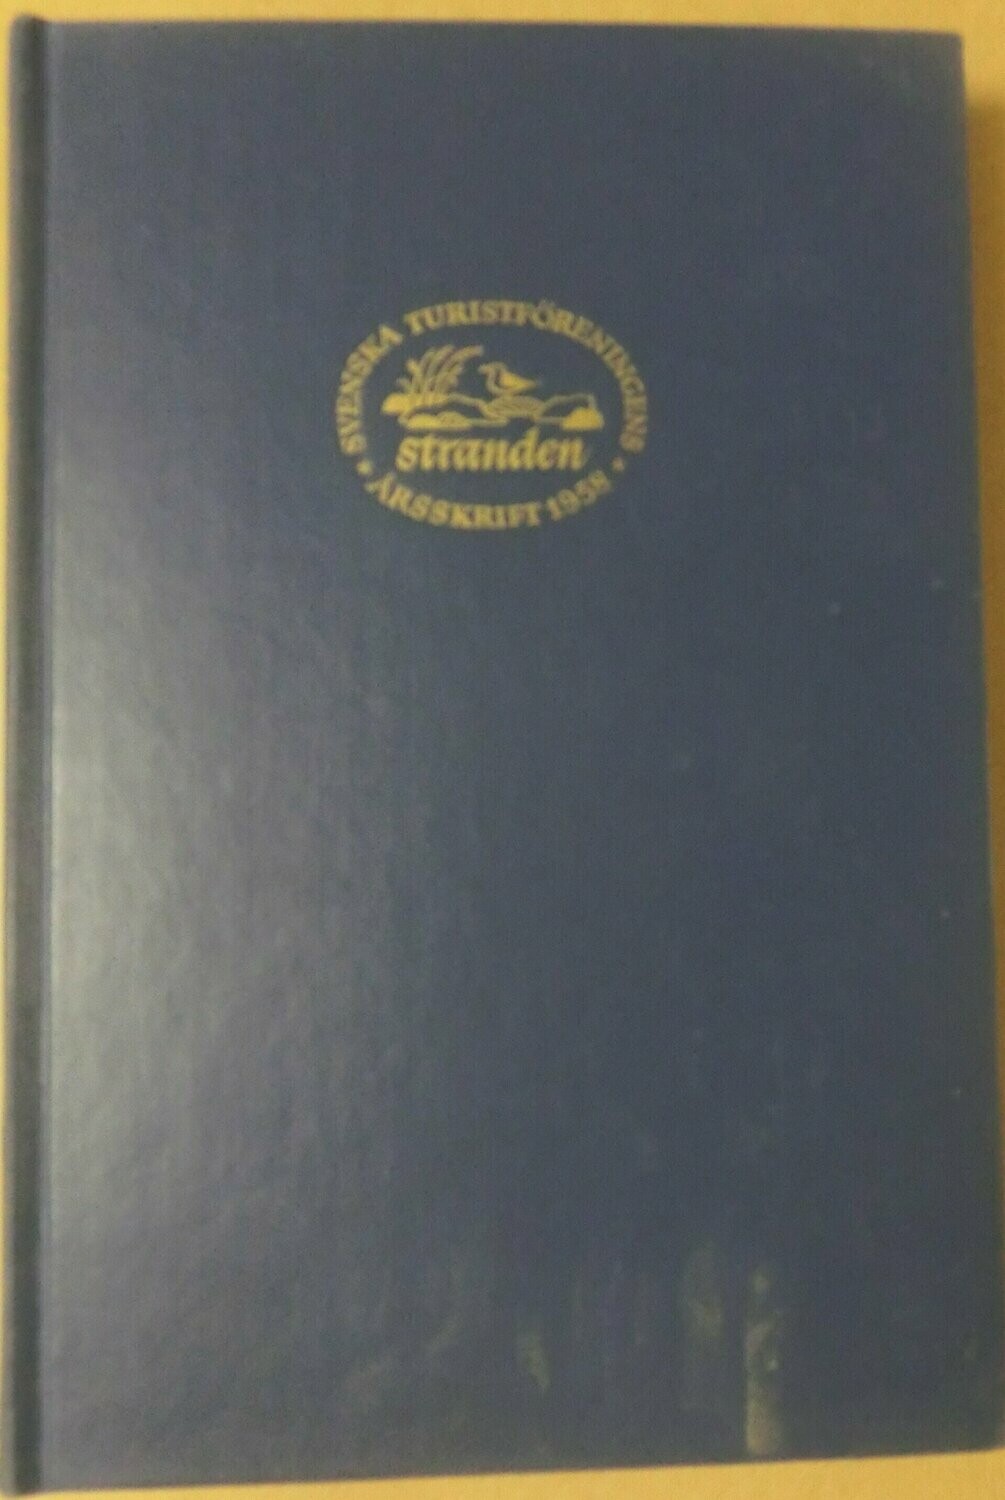 STF årsskrift 1958 - Stranden